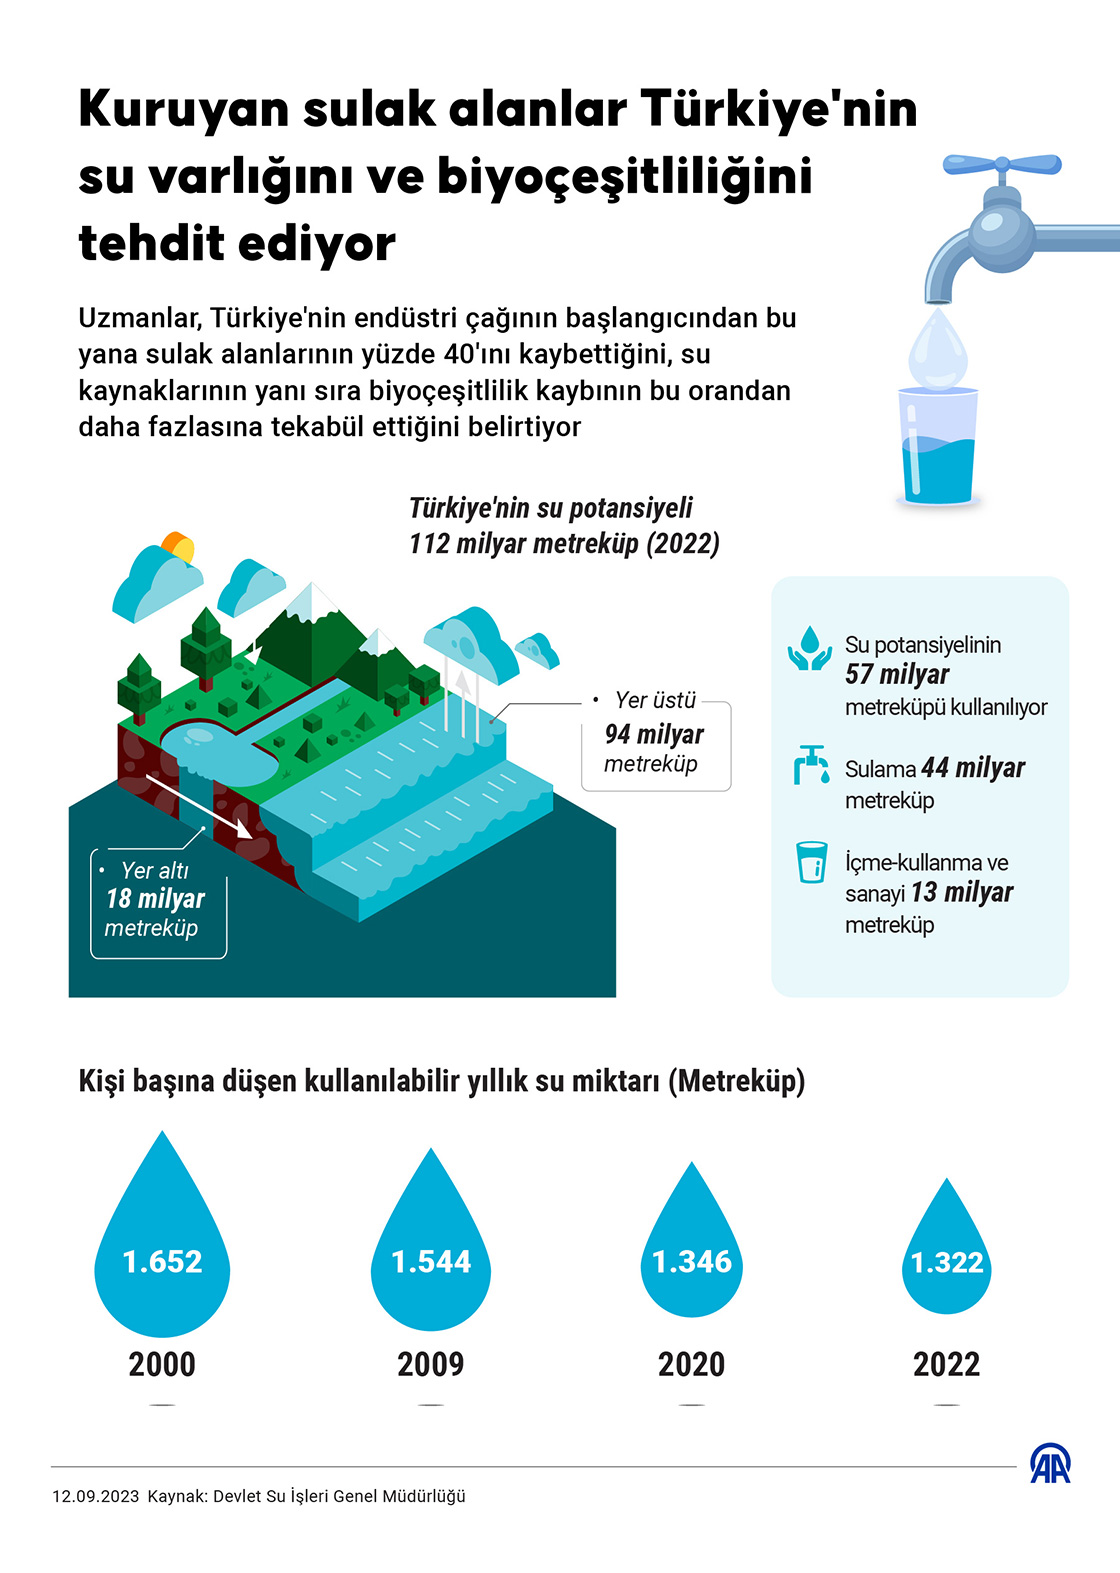 Kuruyan sulak alanlar Türkiye'nin su varlığını ve biyoçeşitliliğini tehdit ediyor